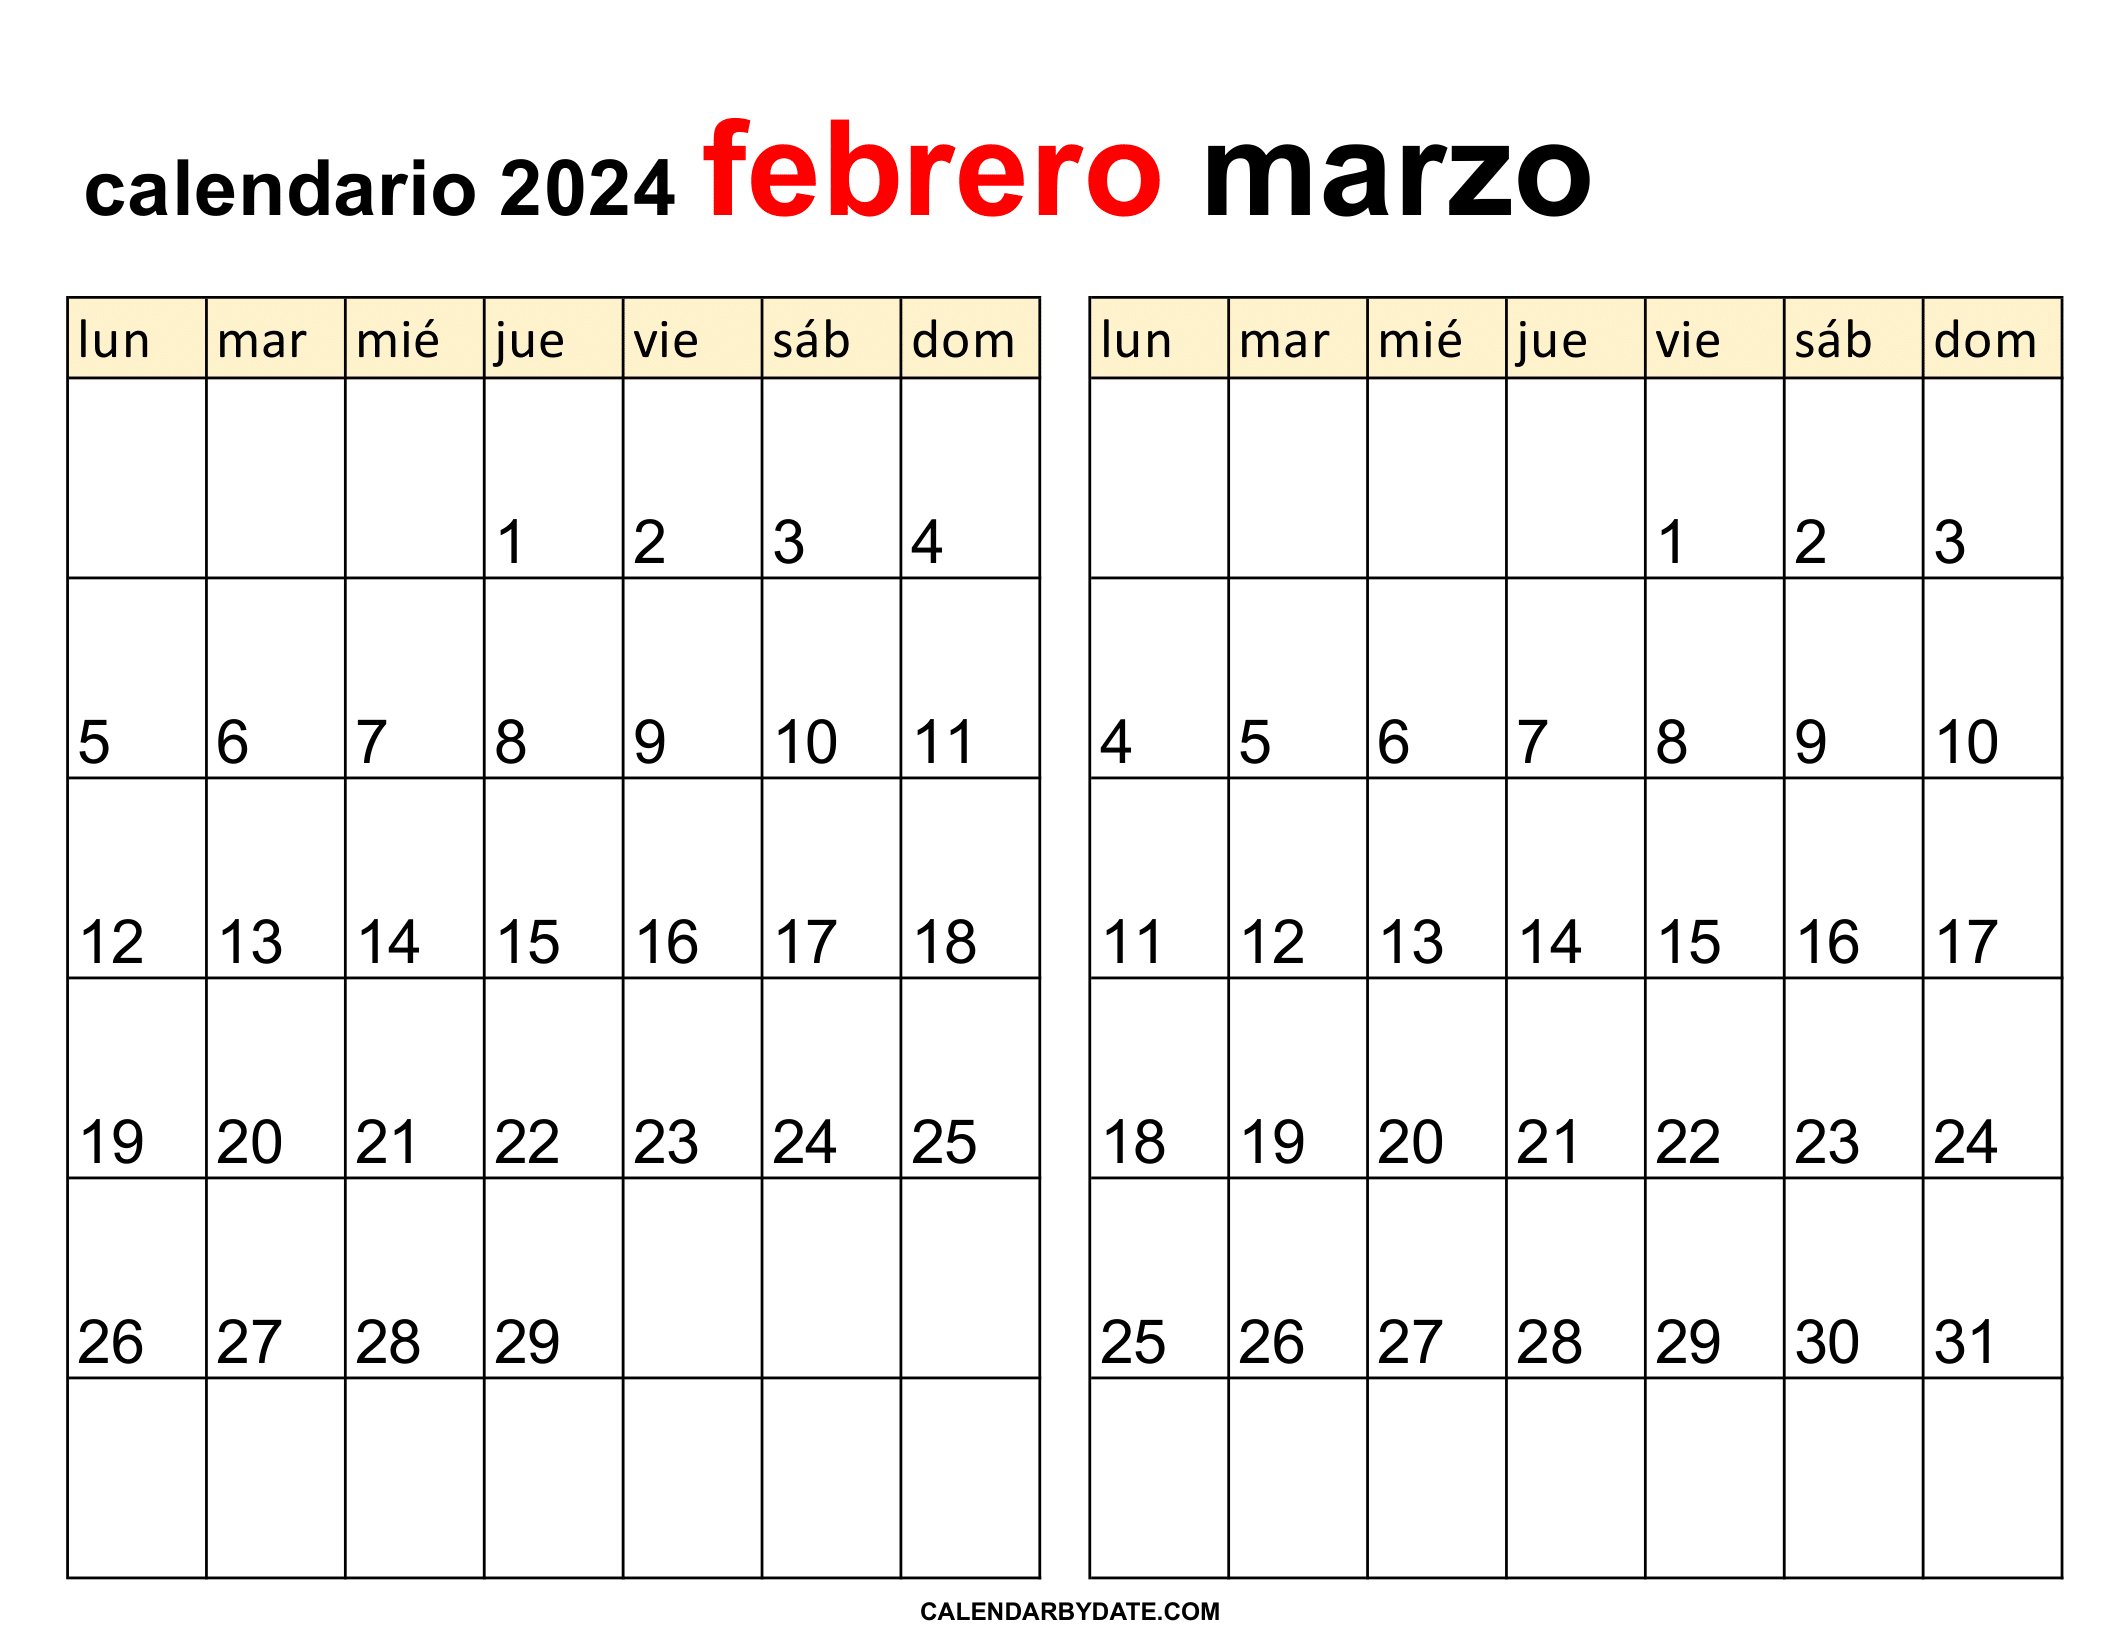 calendario mes de febrero y marzo 2024